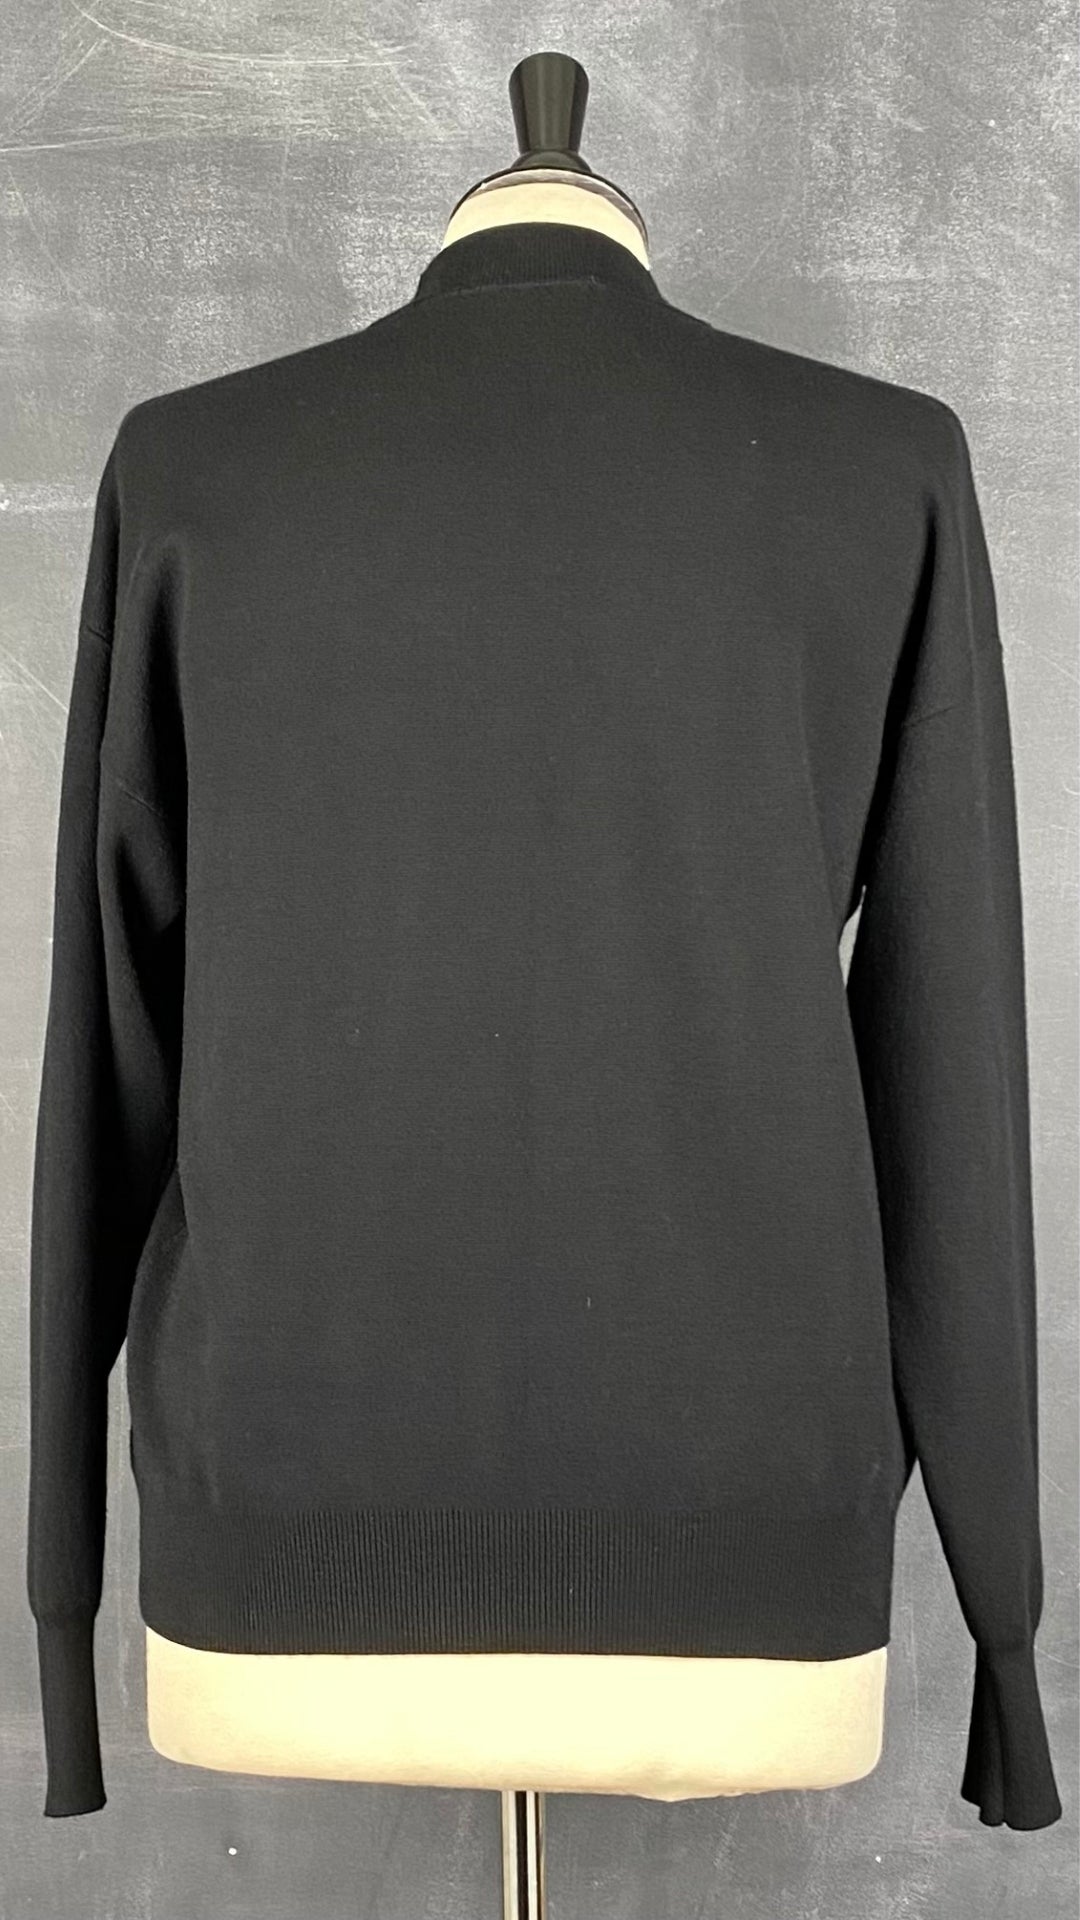 Chandail en tricot léger noir avec broderie Desigual, taille small. Vue de dos.